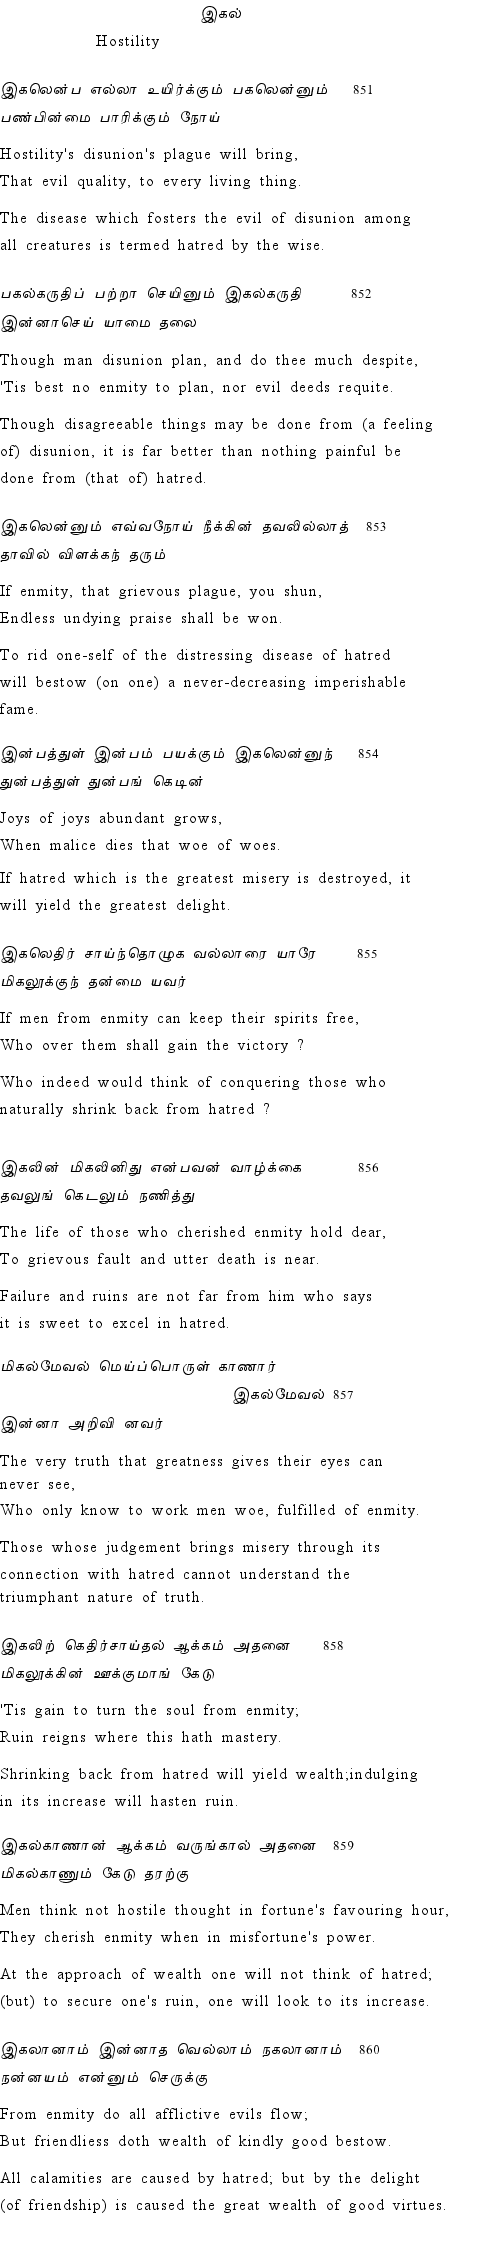 Text of Adhikaram 86